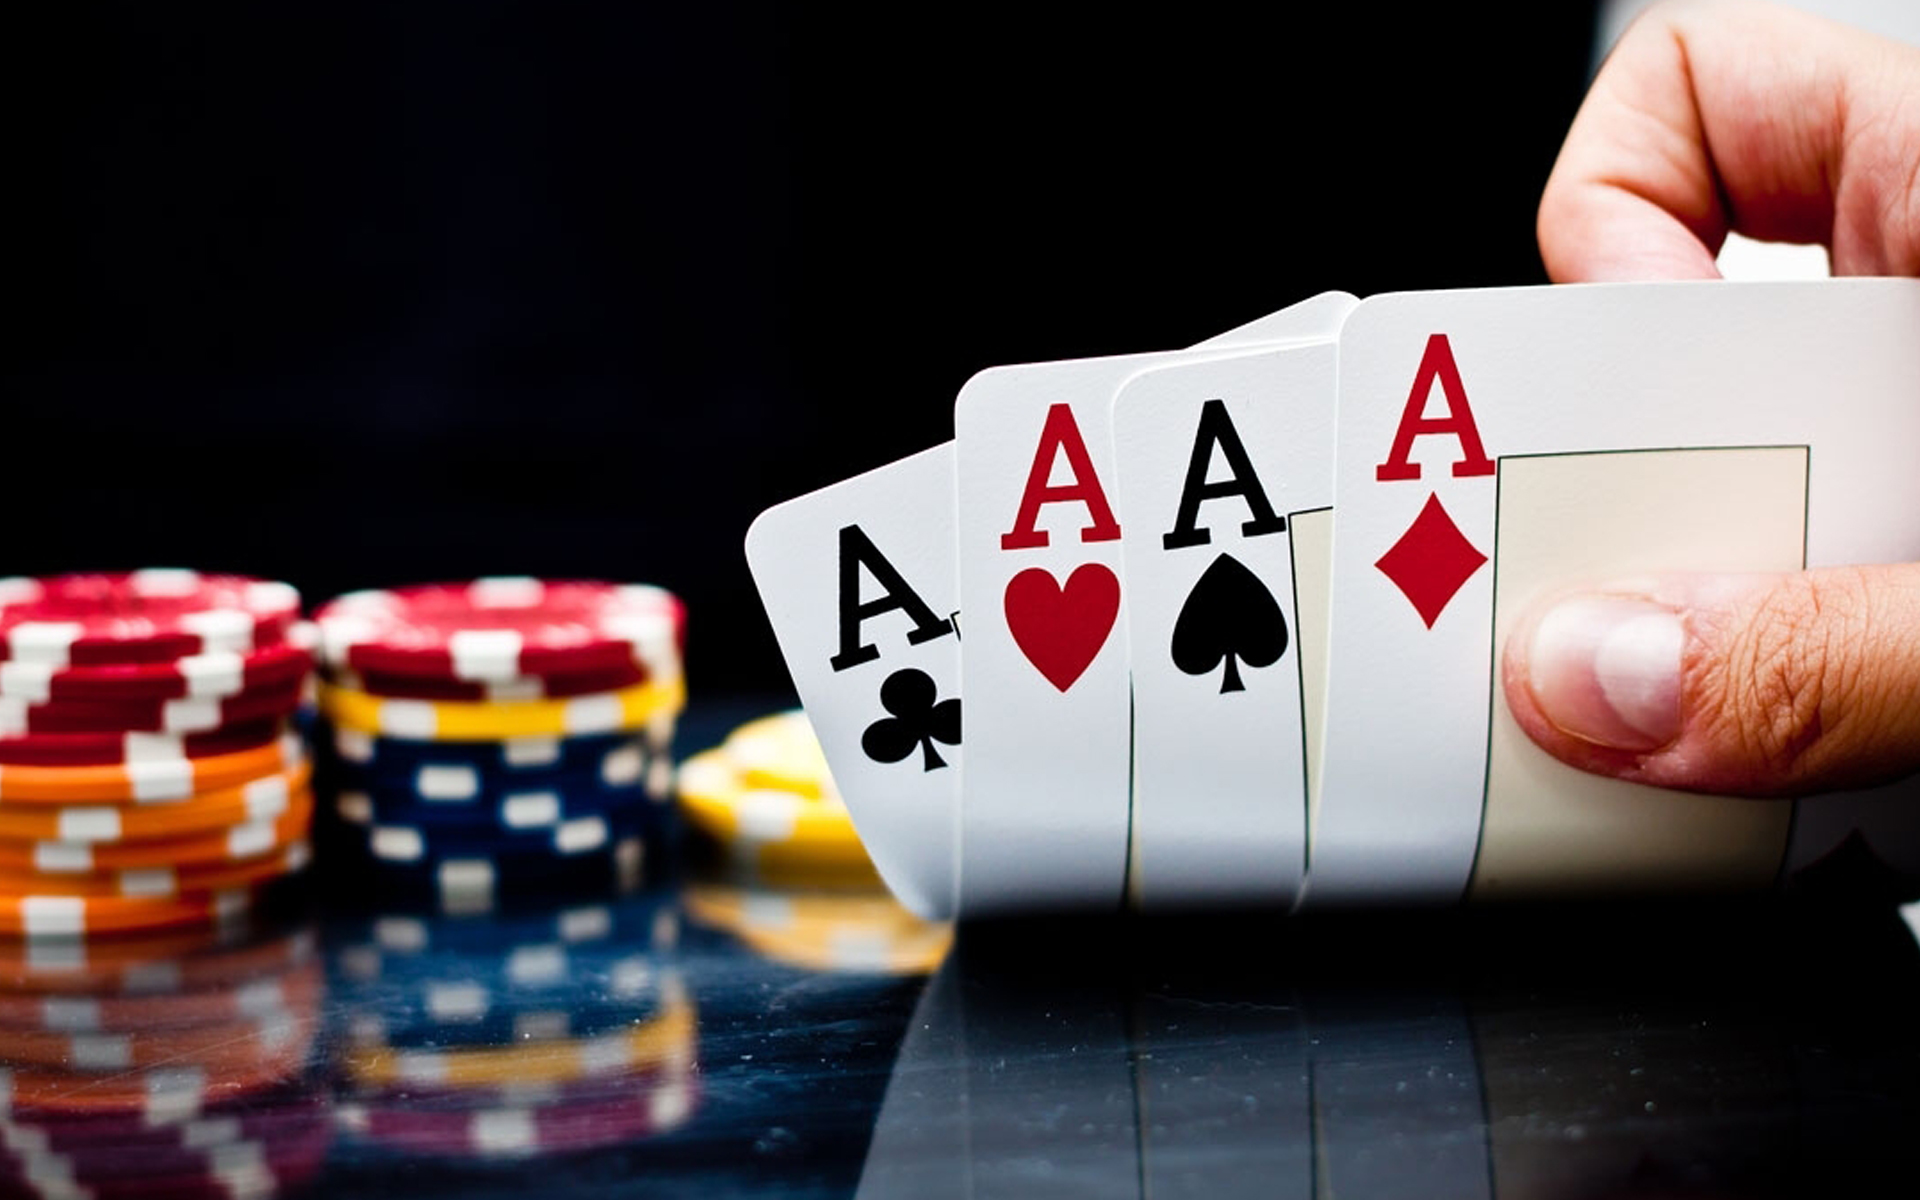 Poker Tips for Beginners